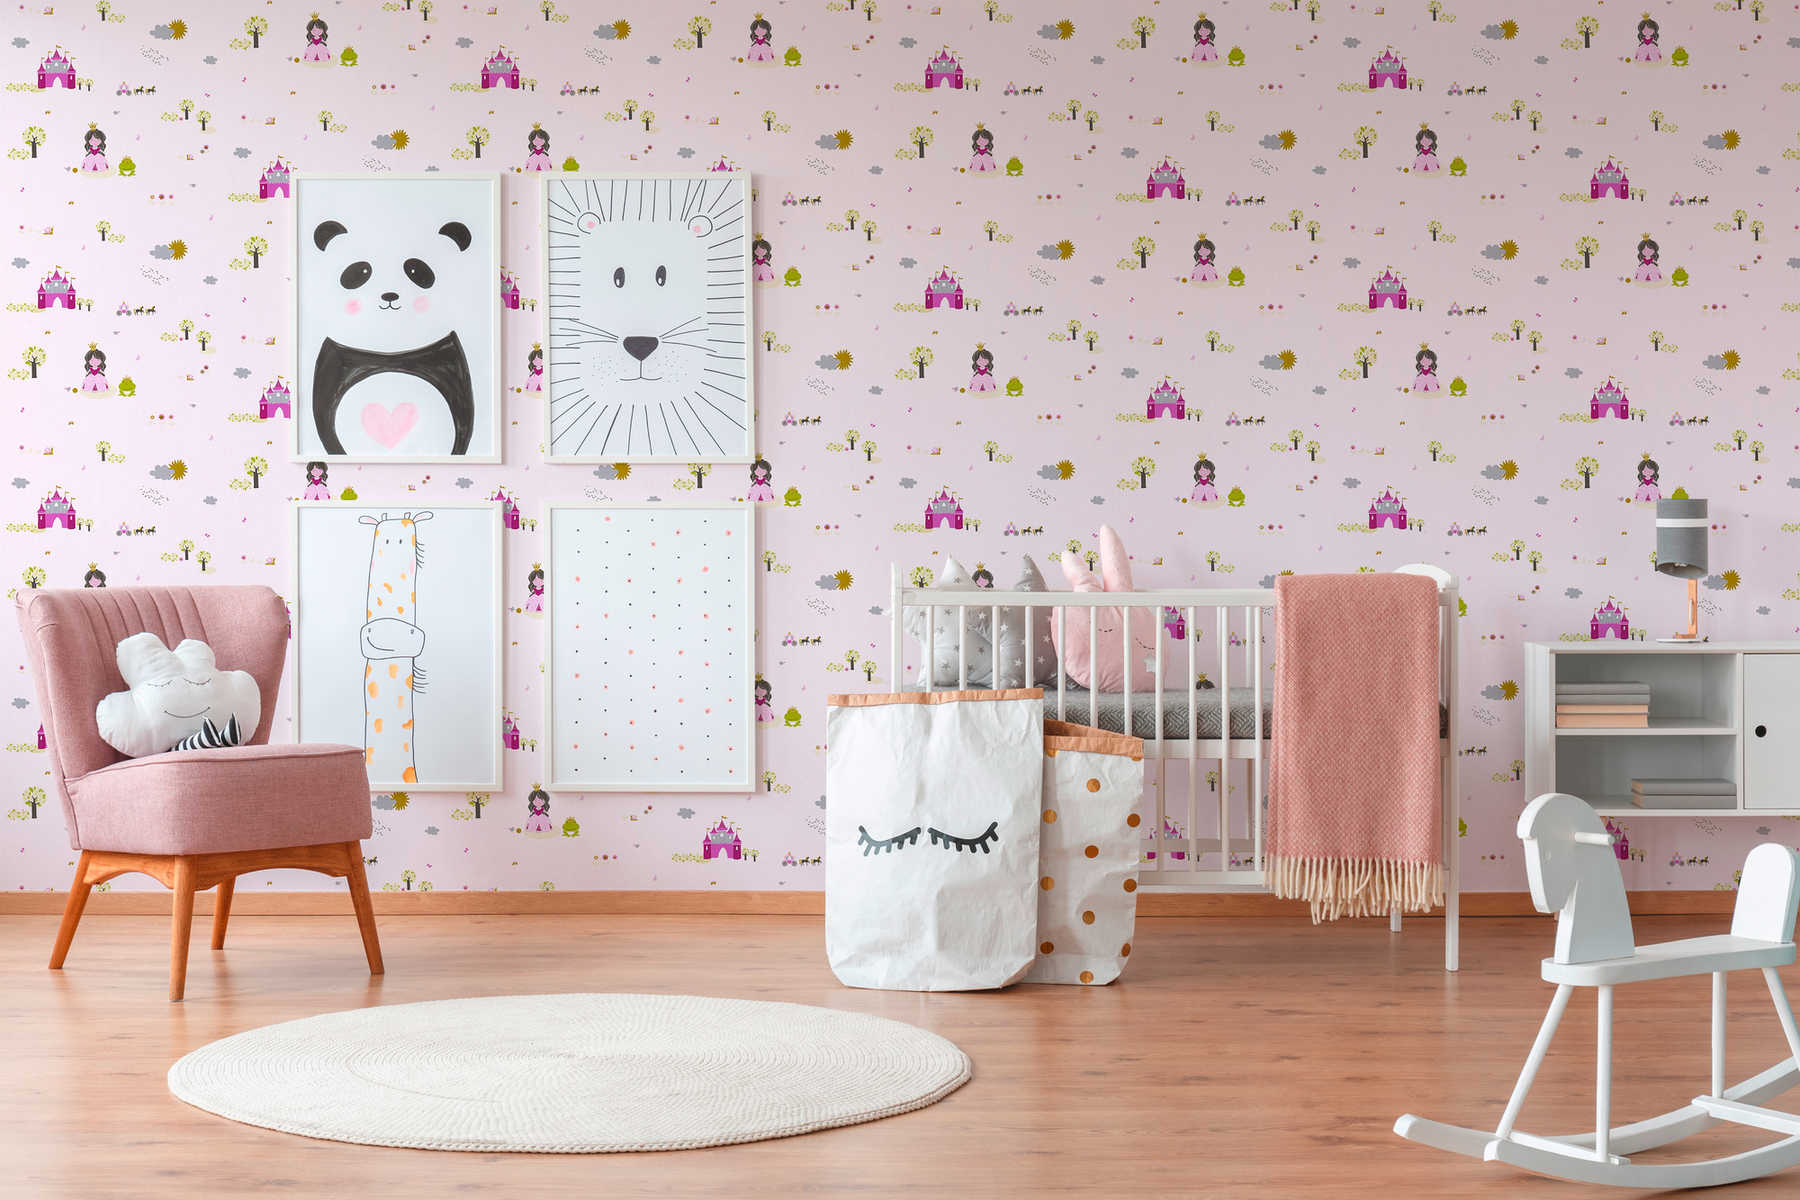             Papel pintado de cuento de hadas para la habitación de los niños - colorido, rosa
        